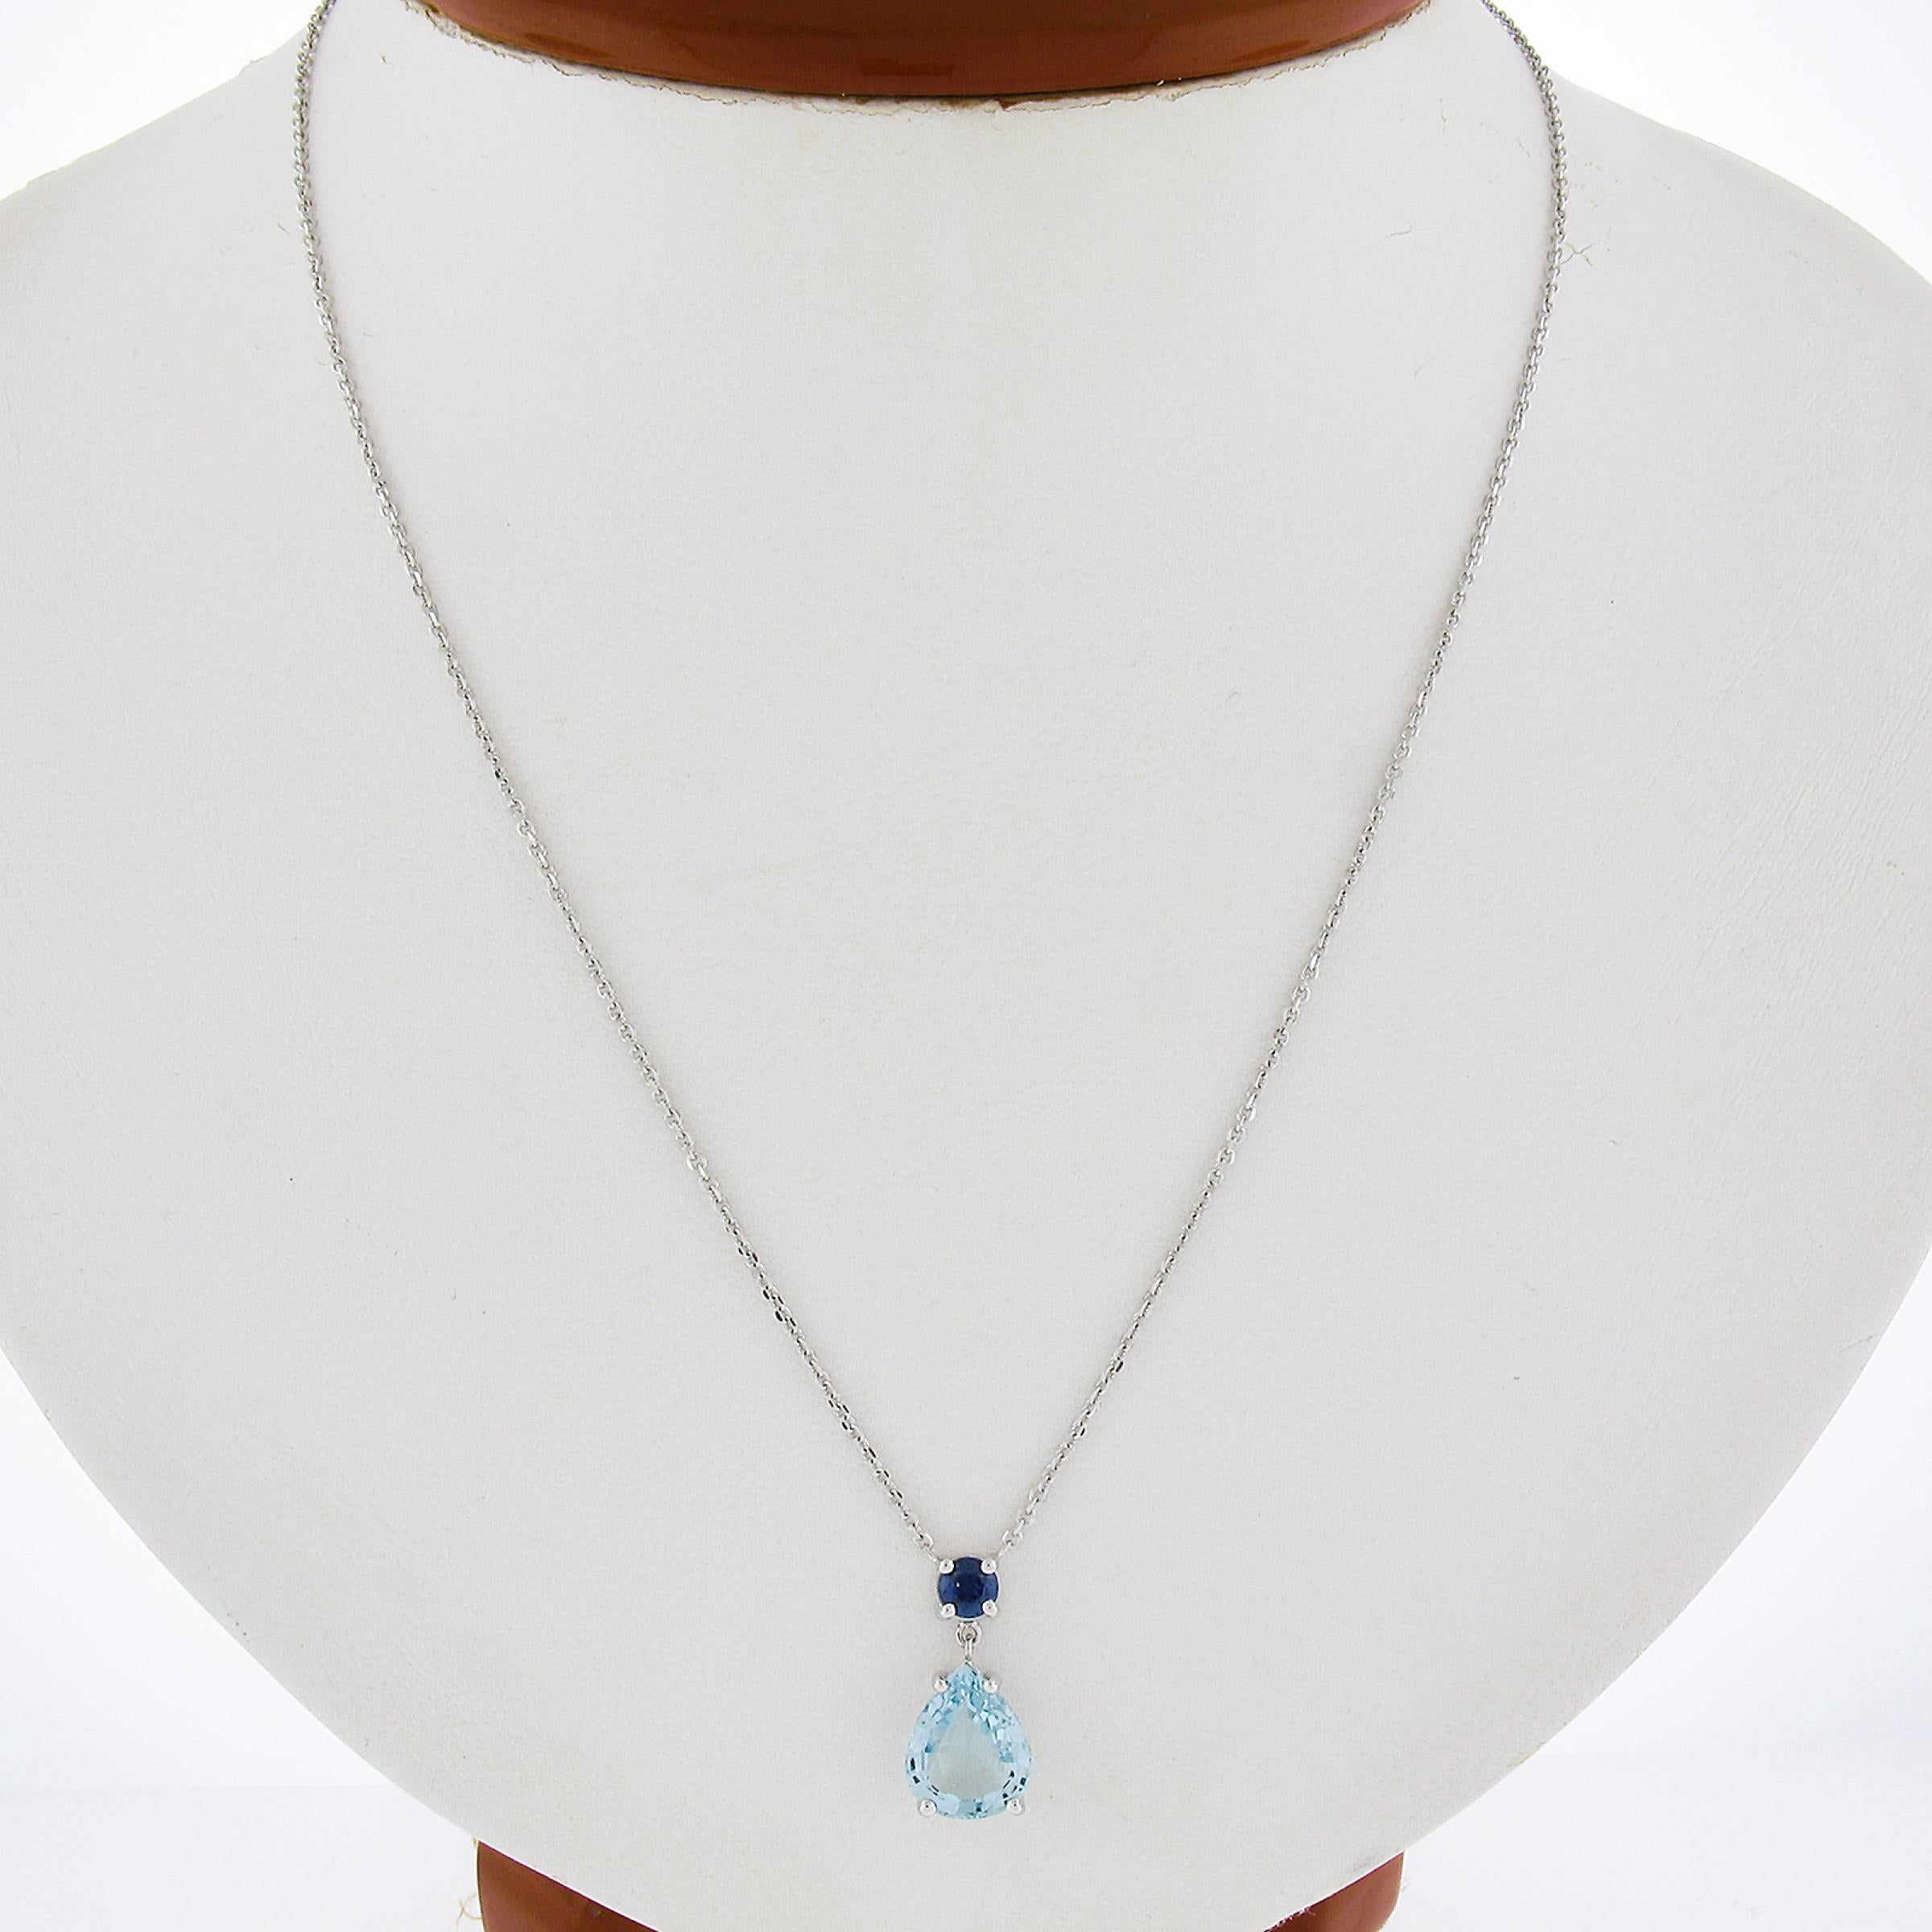 Fantastischer Kontrast von Blau! Sehr tragbare Halskette mit einem einfachen, eleganten Design. Der Aquamarin sticht hervor und der Saphir verleiht diesem Stück einen besonderen Touch! Viel Spaß!

--Stein(e):--
(1) Natürlicher echter Aquamarin -